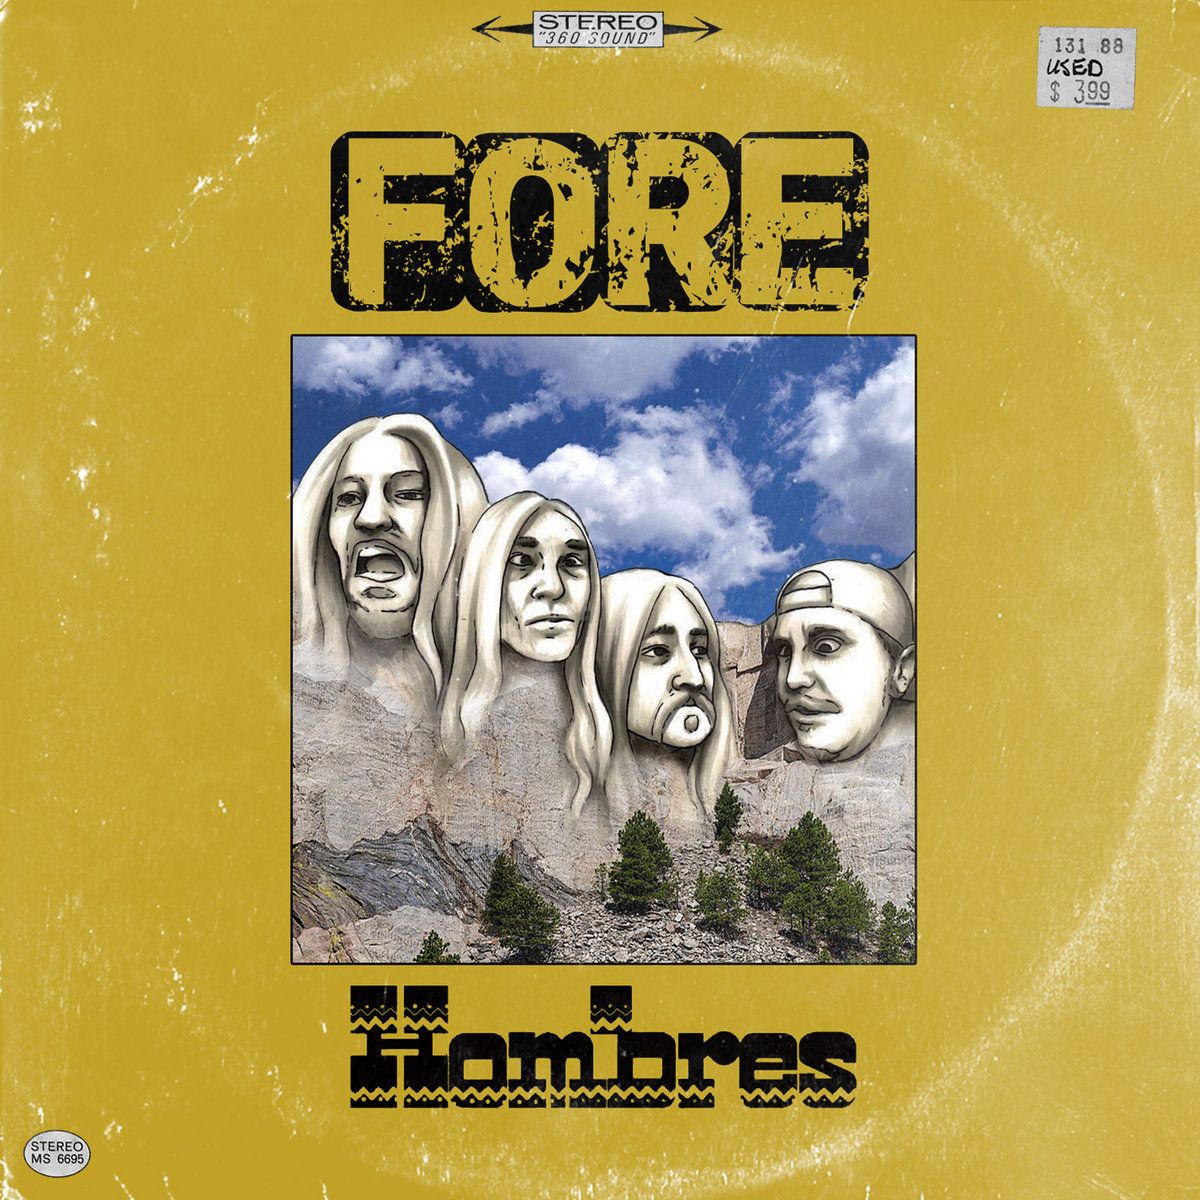 "Hombres"-Album erscheint auf Vinyl bei ftwctp Records